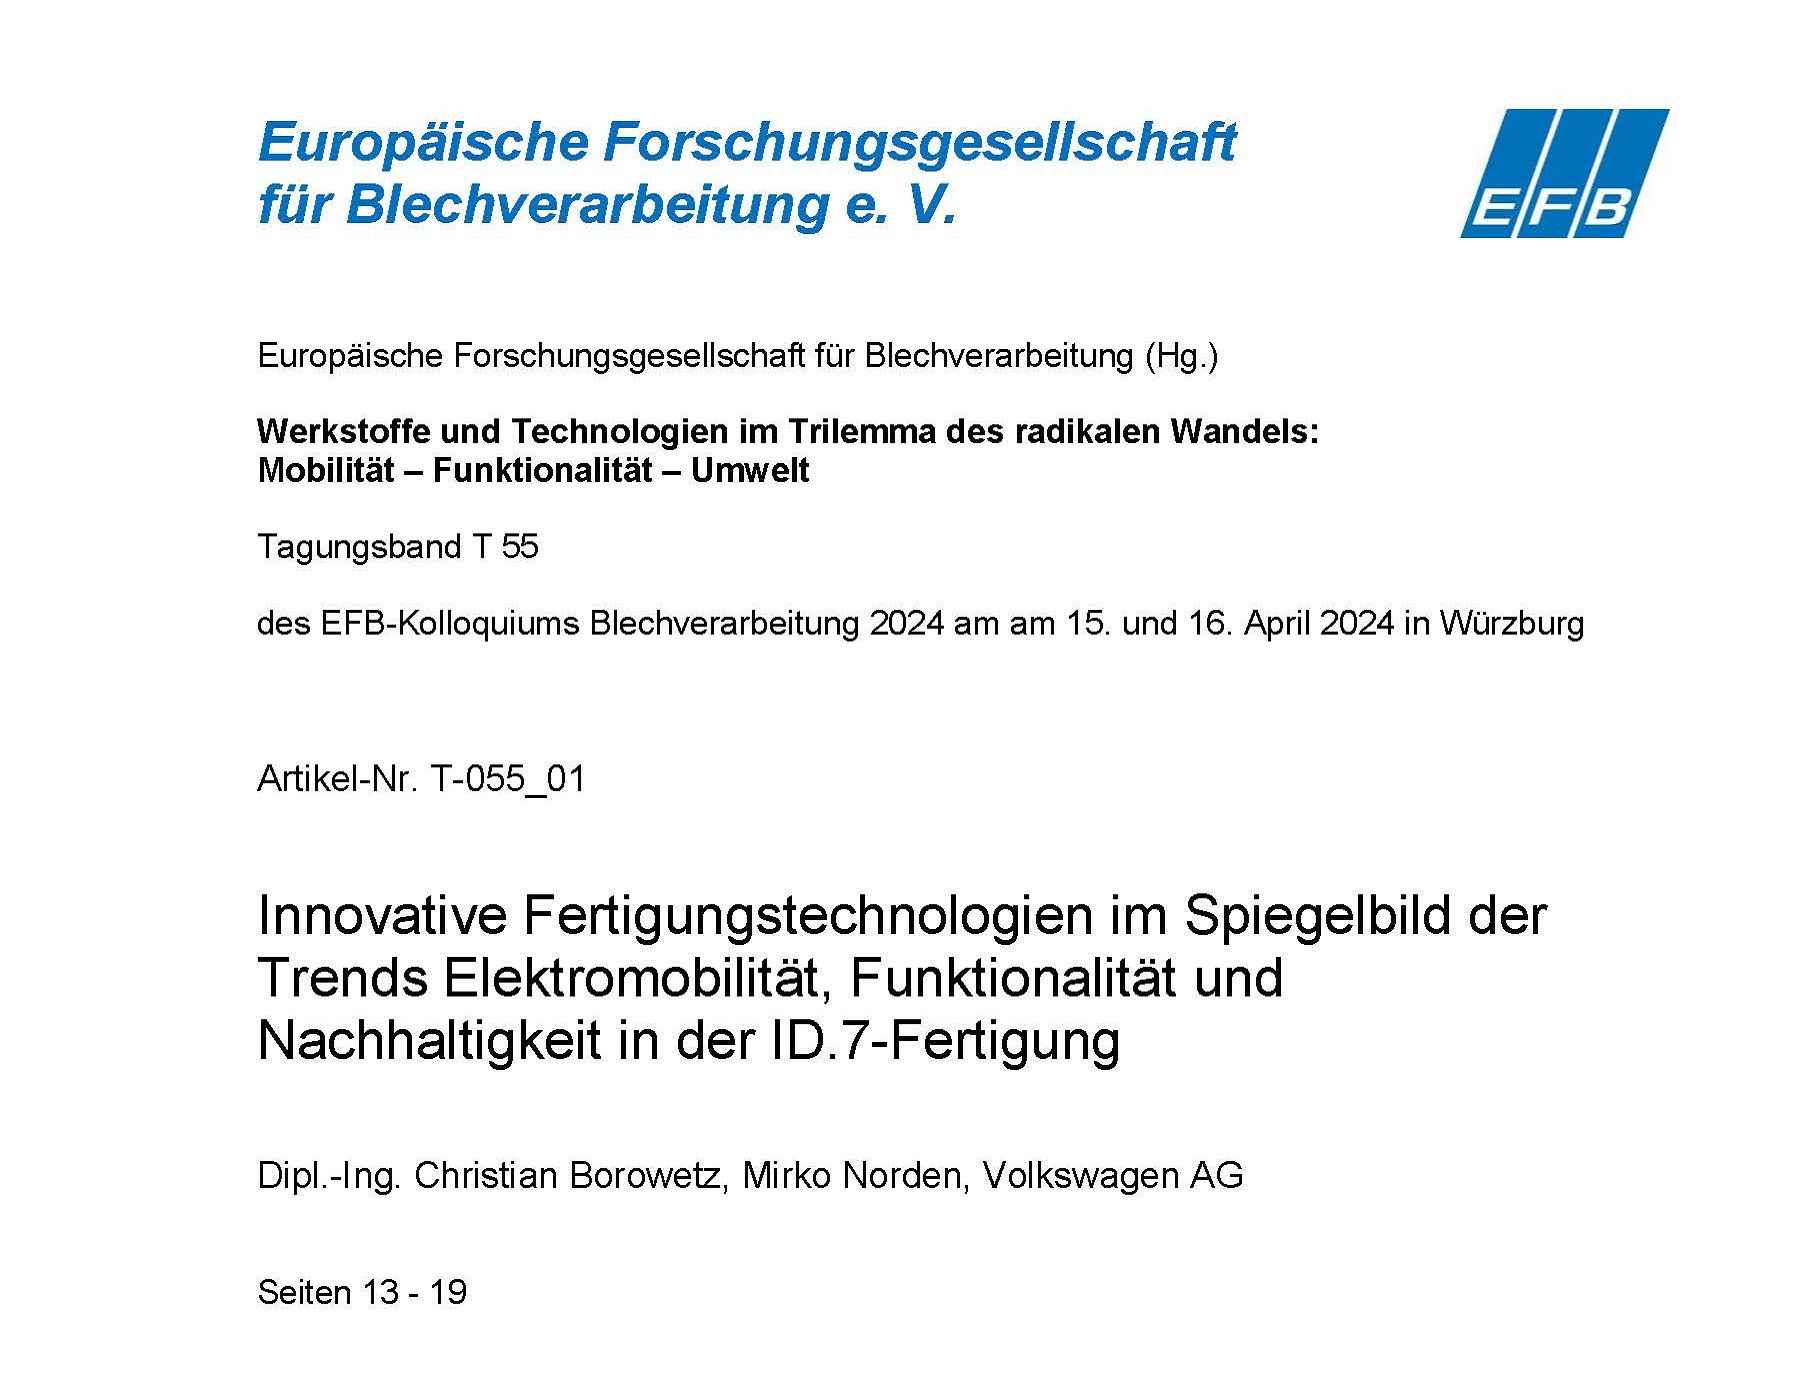 Innovative Fertigungstechnologien im Spiegelbild der Trends Elektromobilität, Funktionalität und Nachhaltigkeit in der ID.7-Fertigung